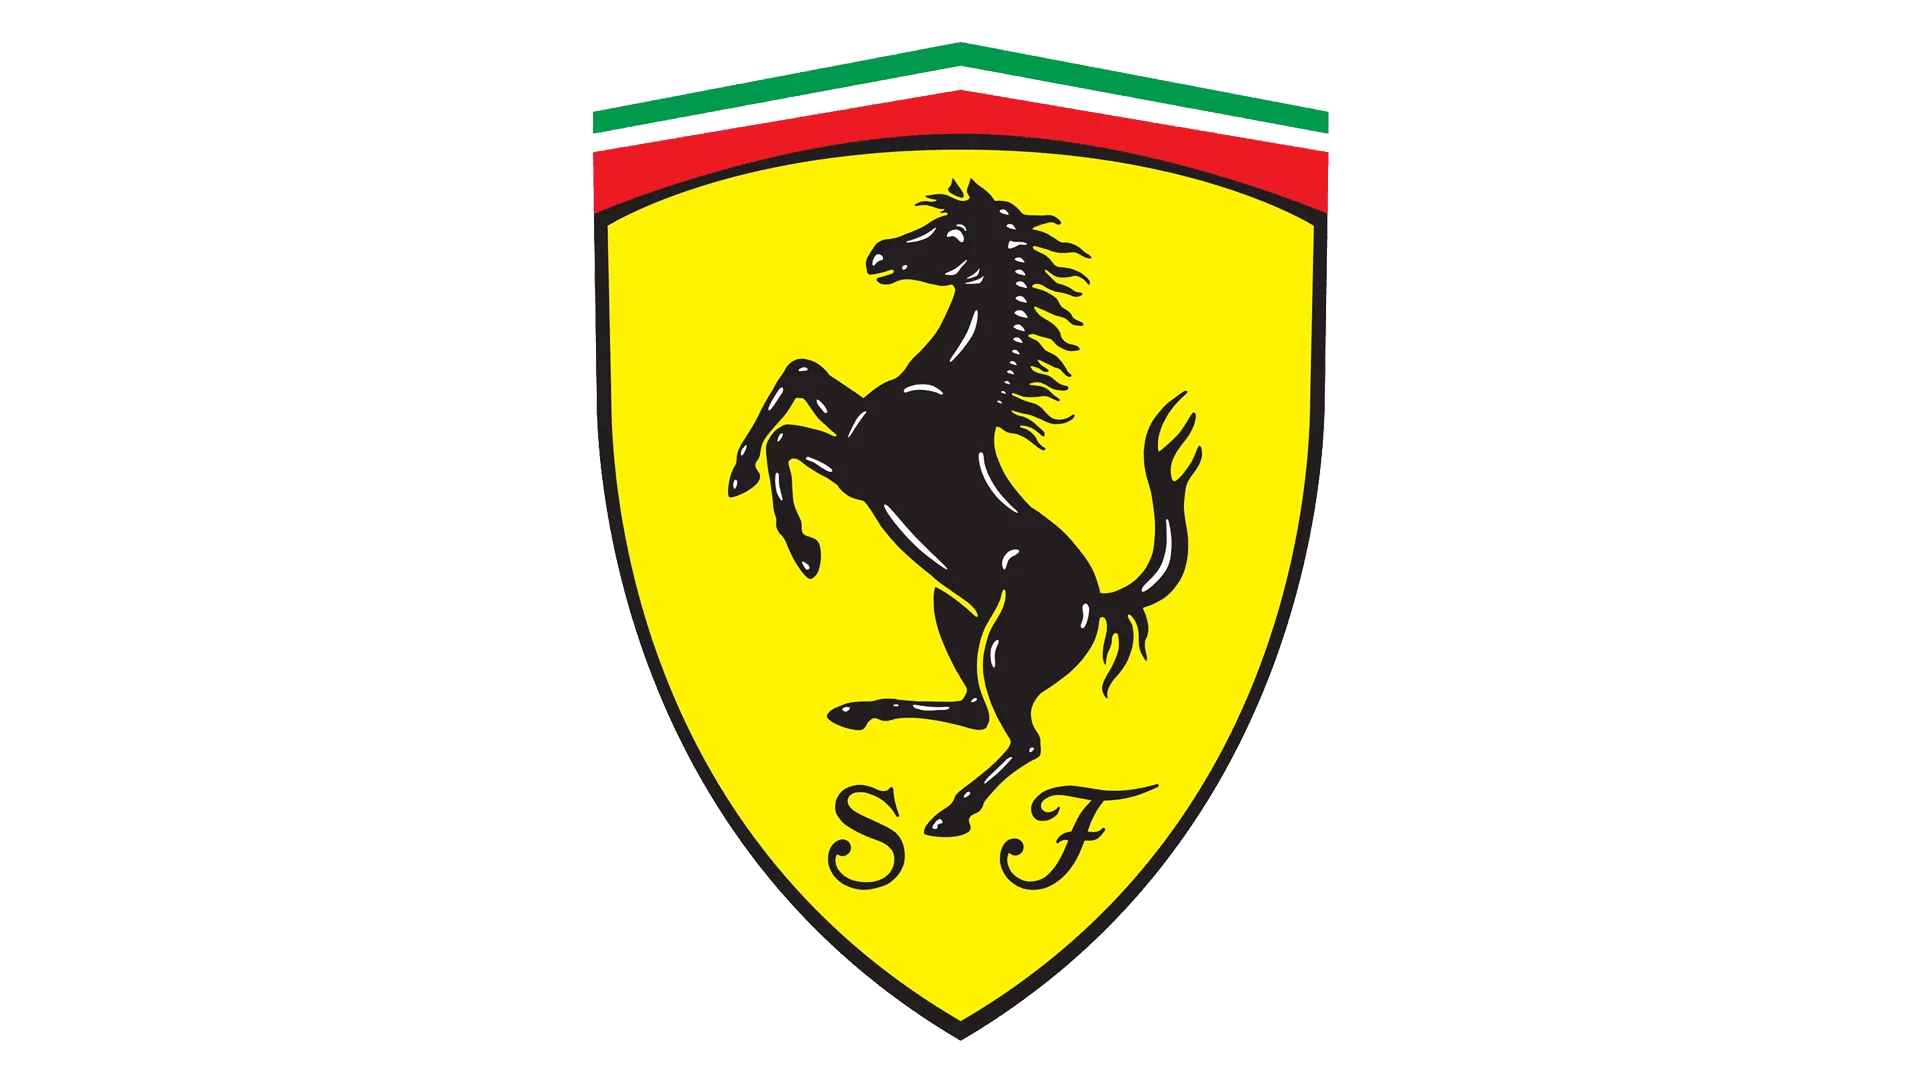 Ferrari auction